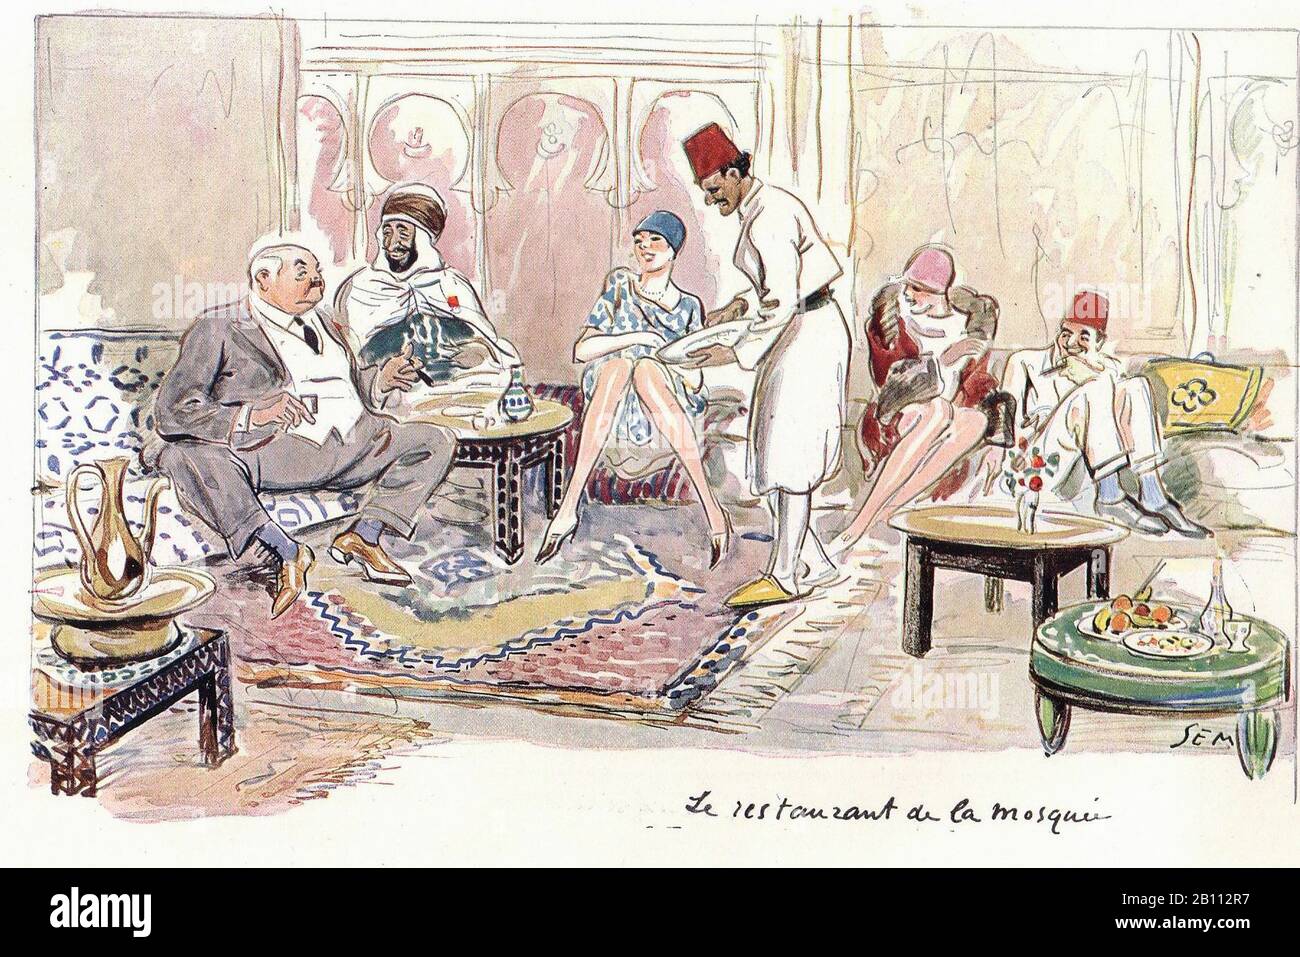 Le restaurant de la mosquée - Ilustración de SEM (Georges Goursat 1863–1934) Foto de stock